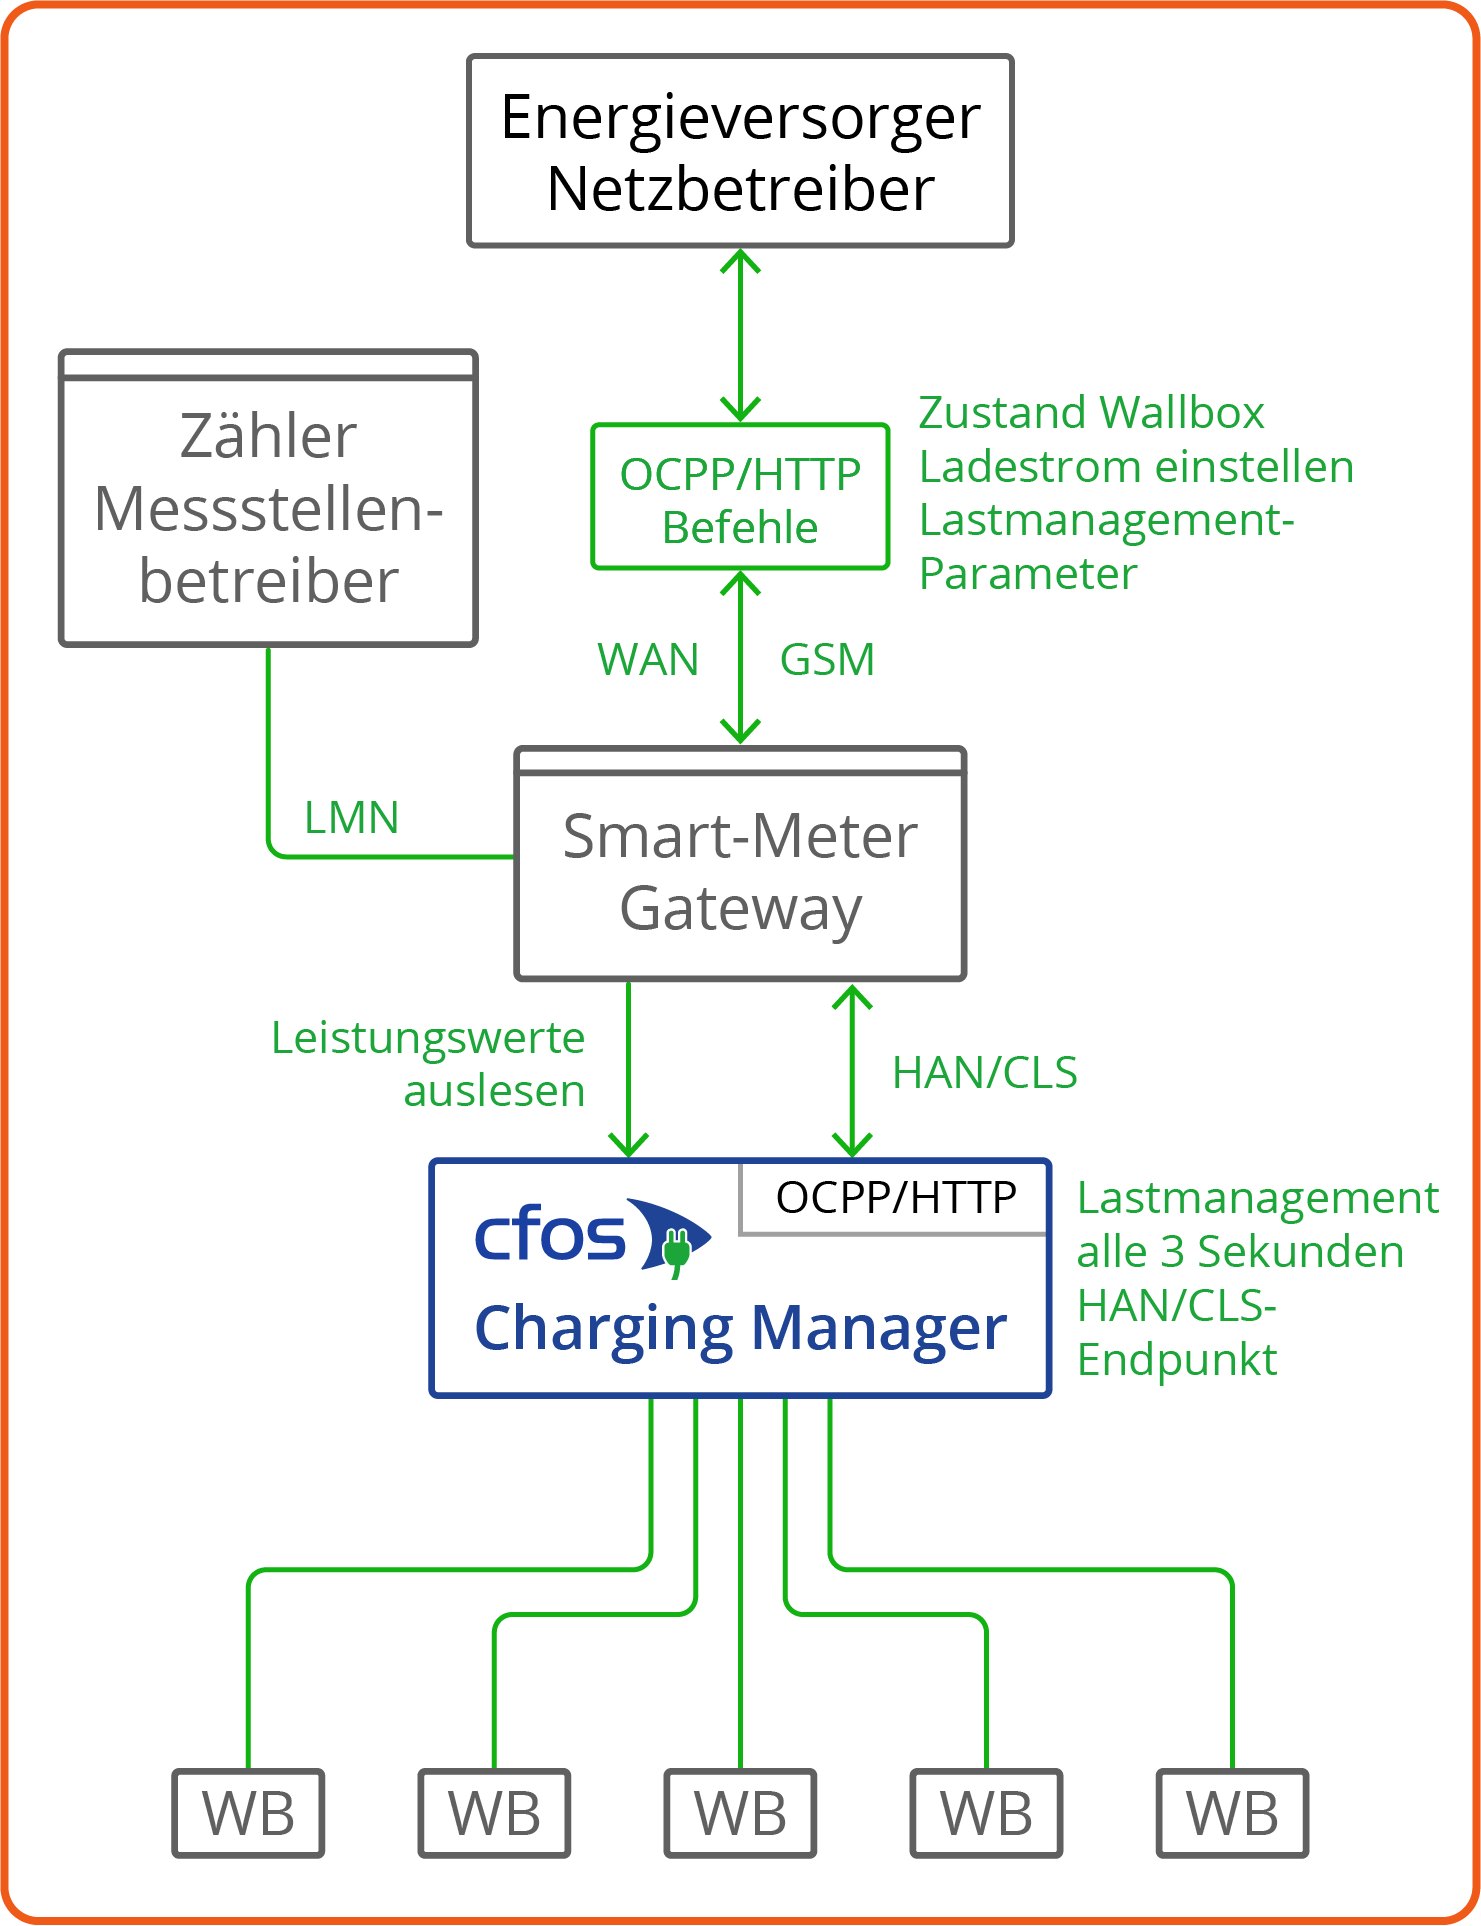 Figure Grid-serving charging management